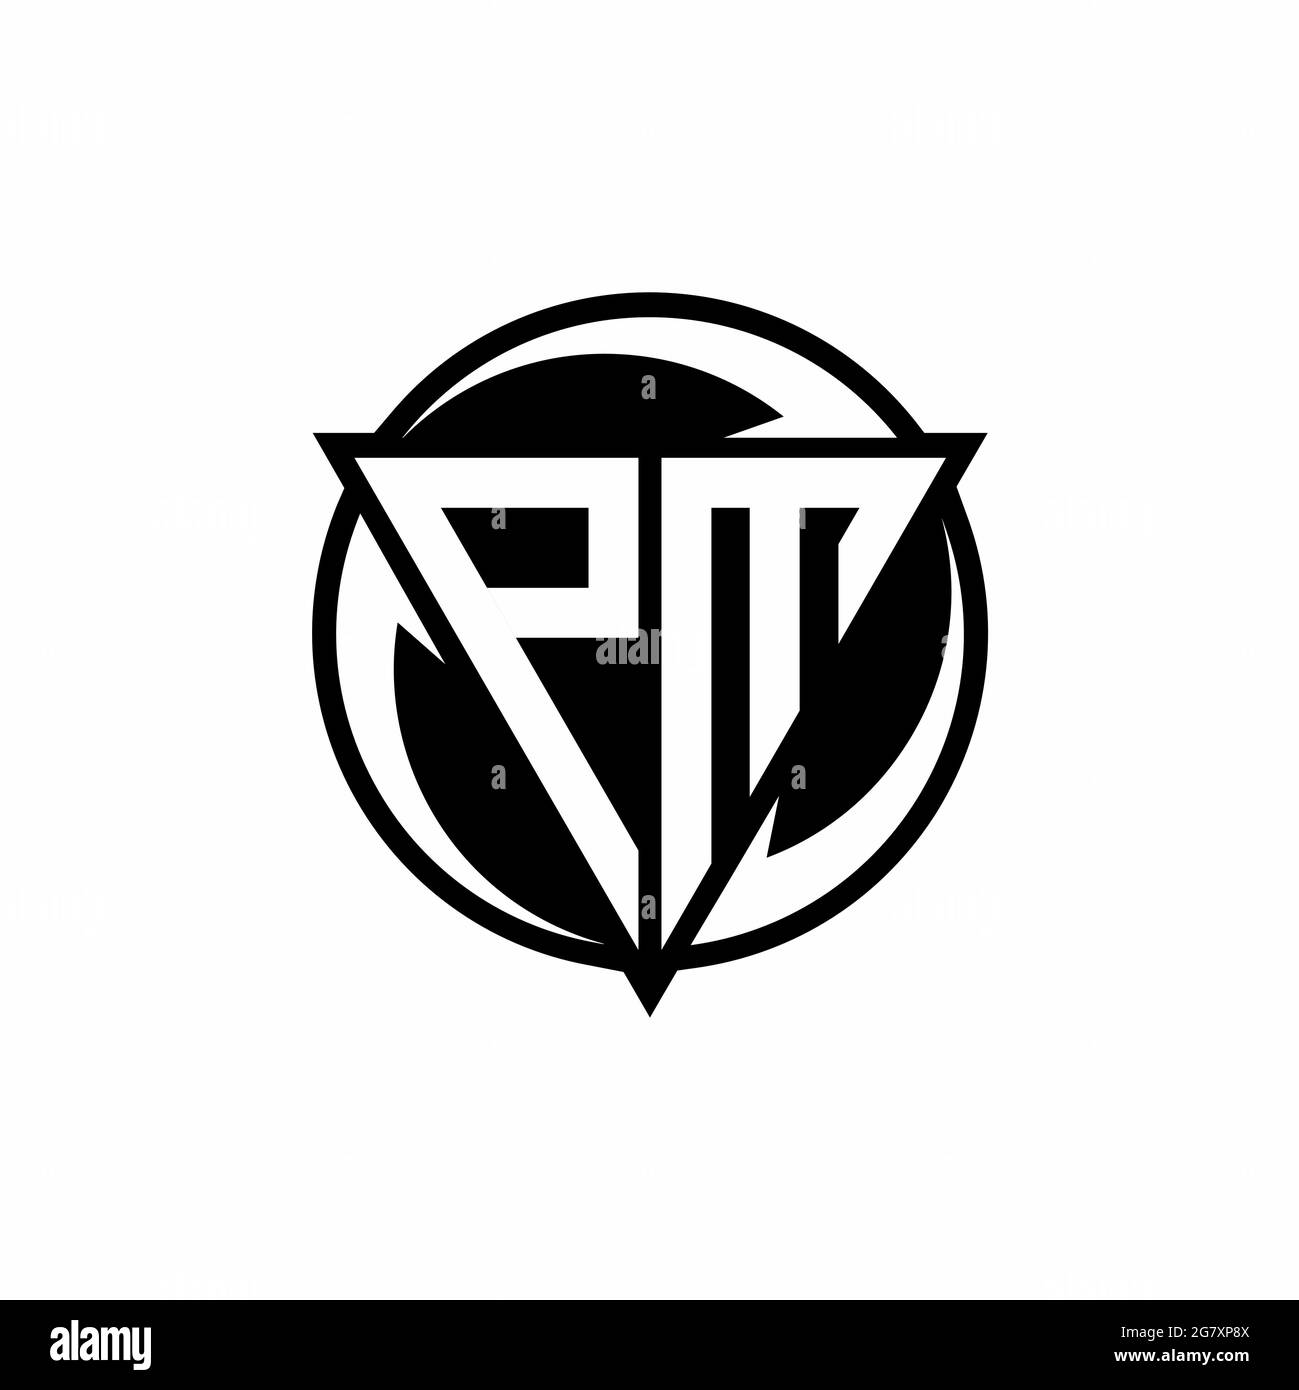 PM Logo design (2379028)